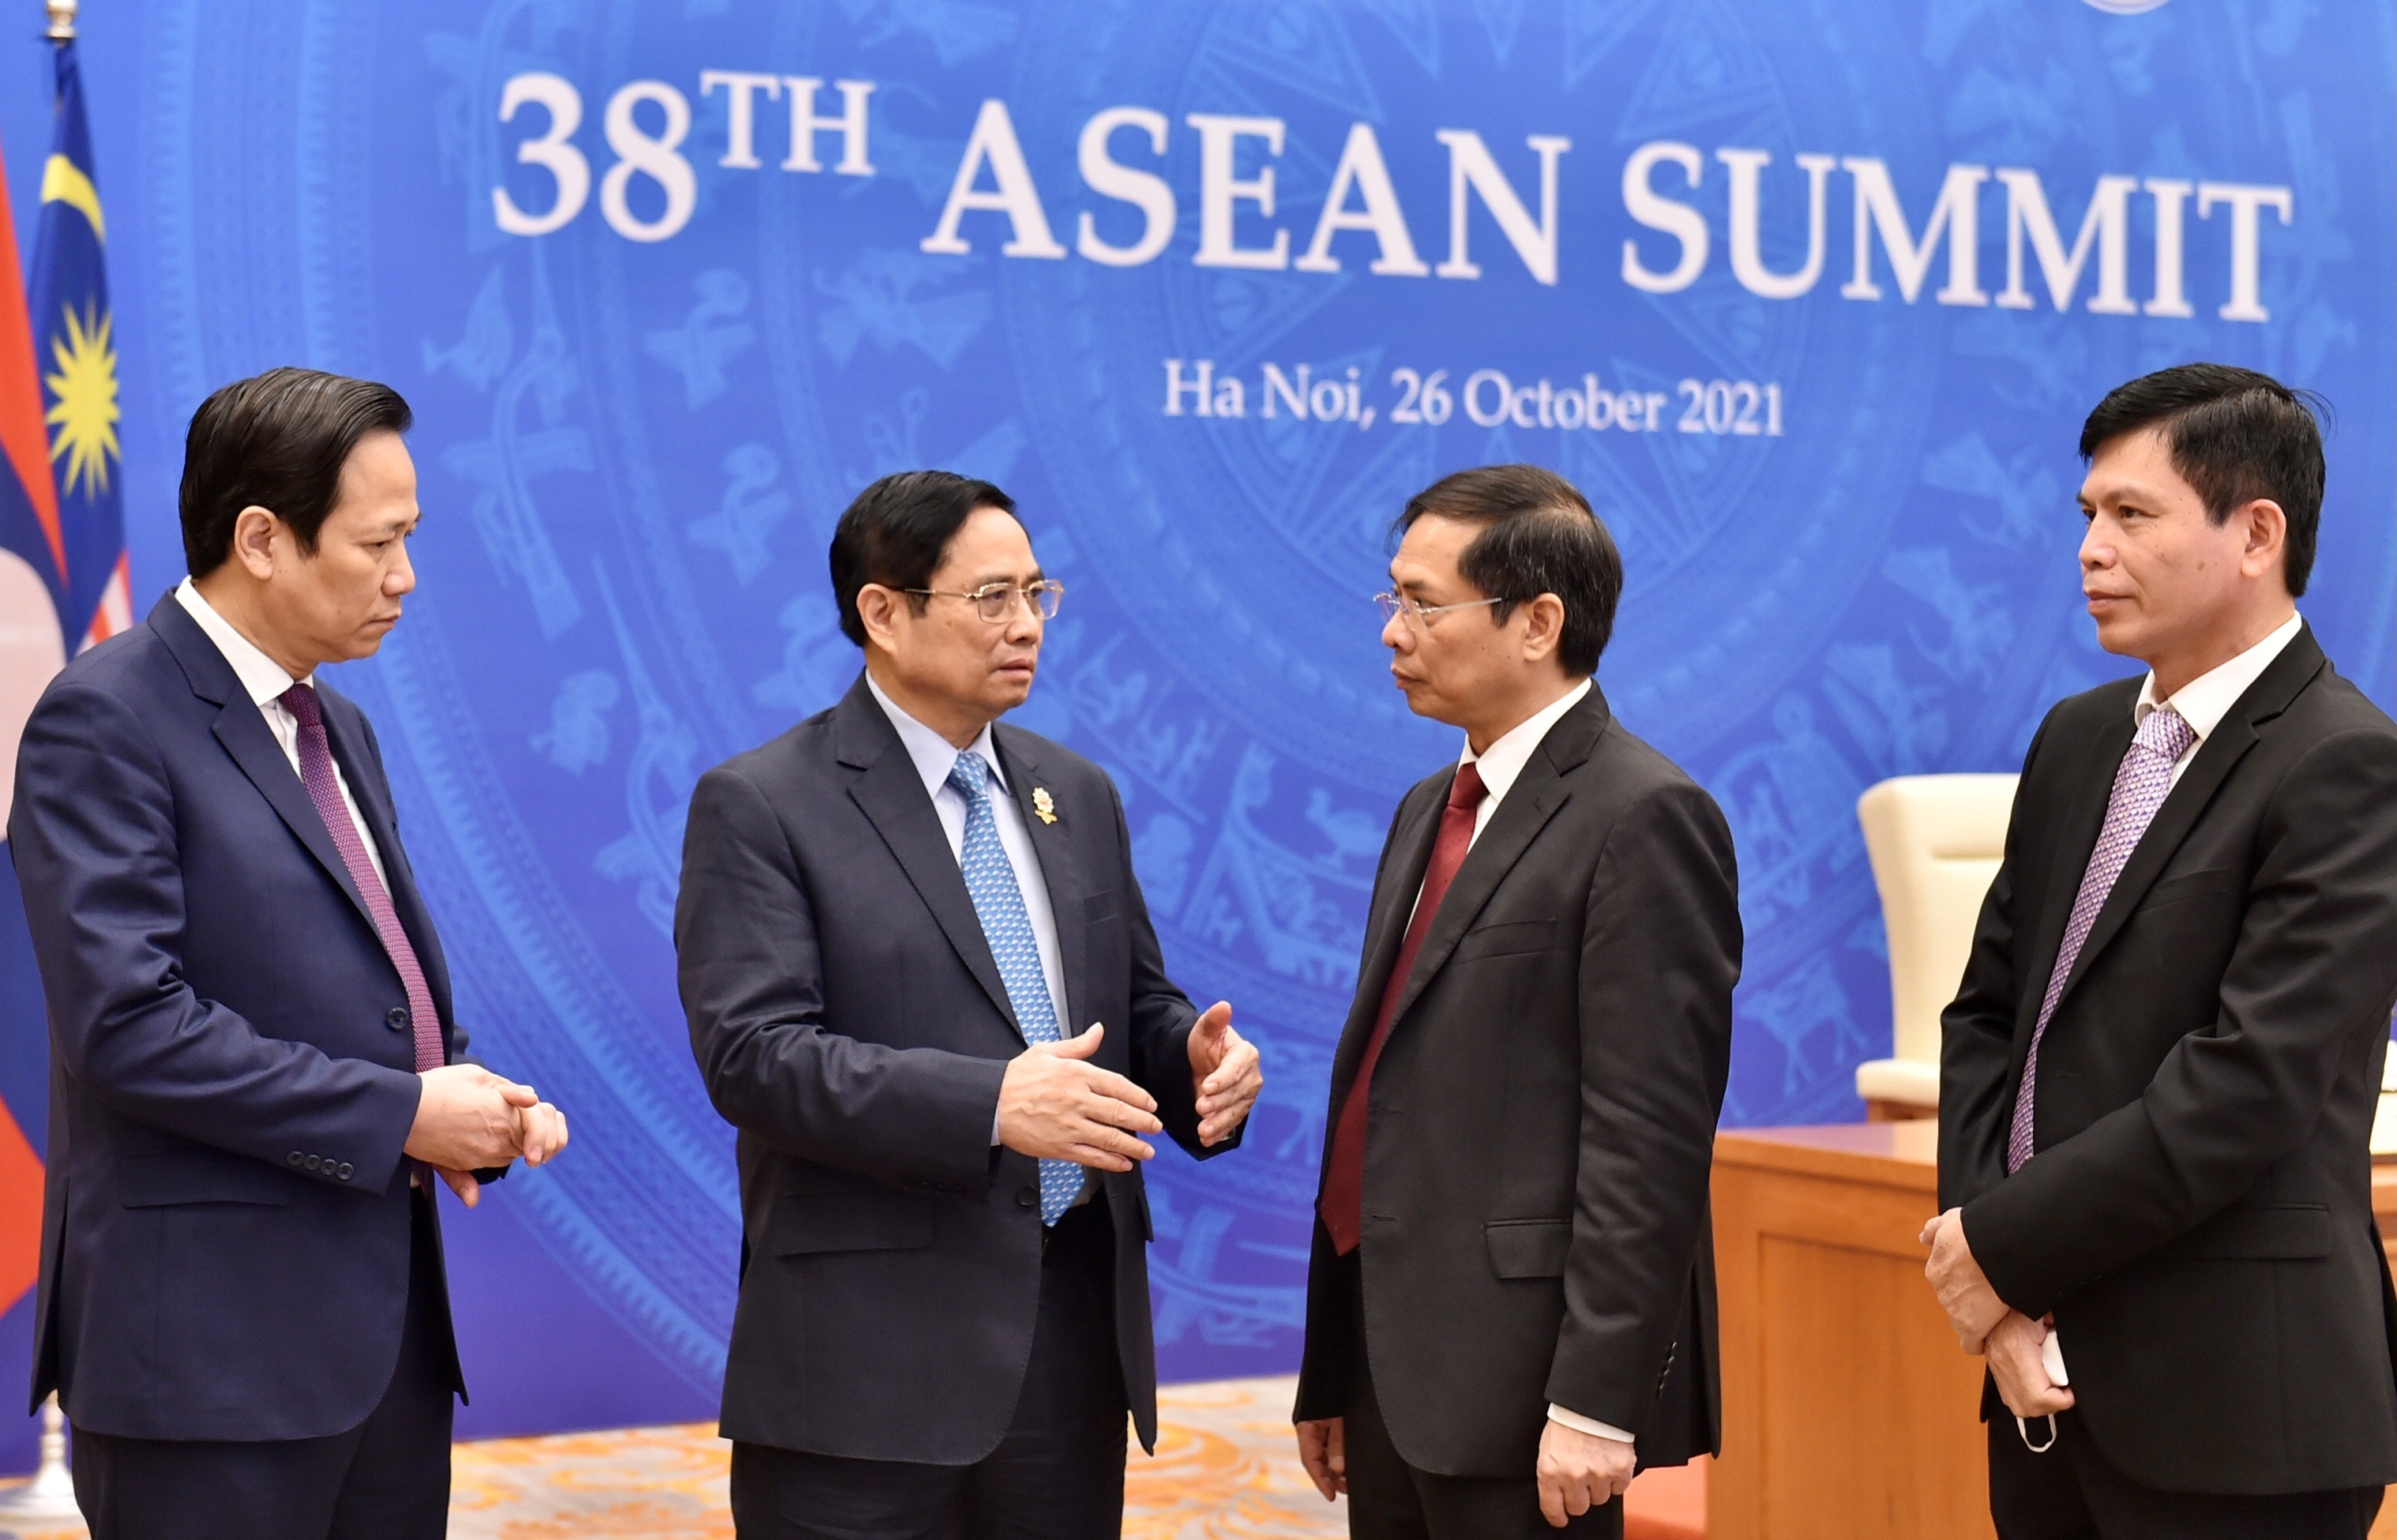 Mái nhà chung ASEAN: Vững vàng trước sóng gió thời cuộc - 1